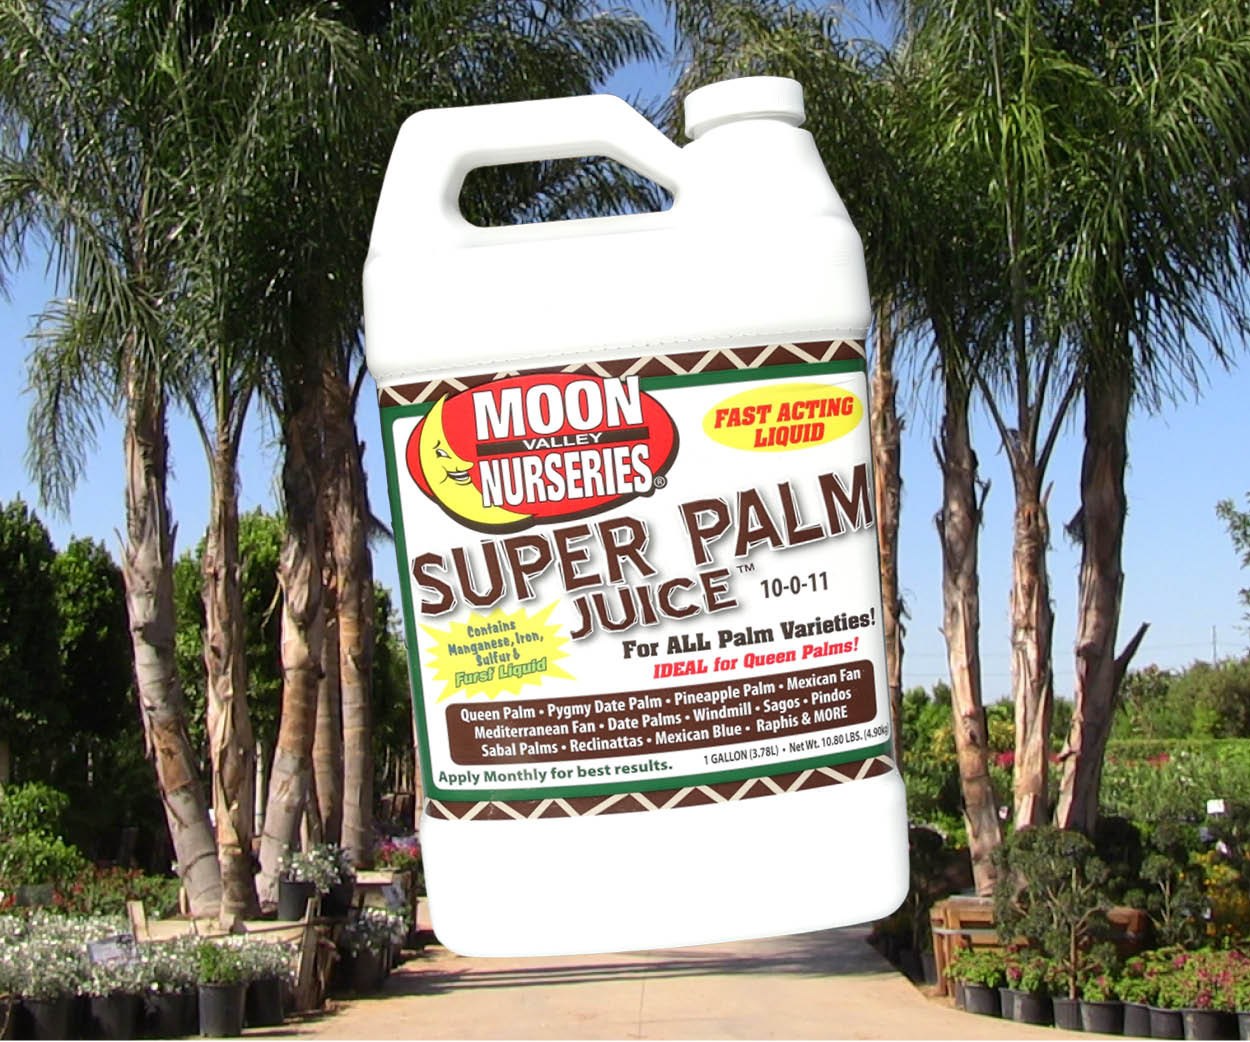 Super Palm Juice